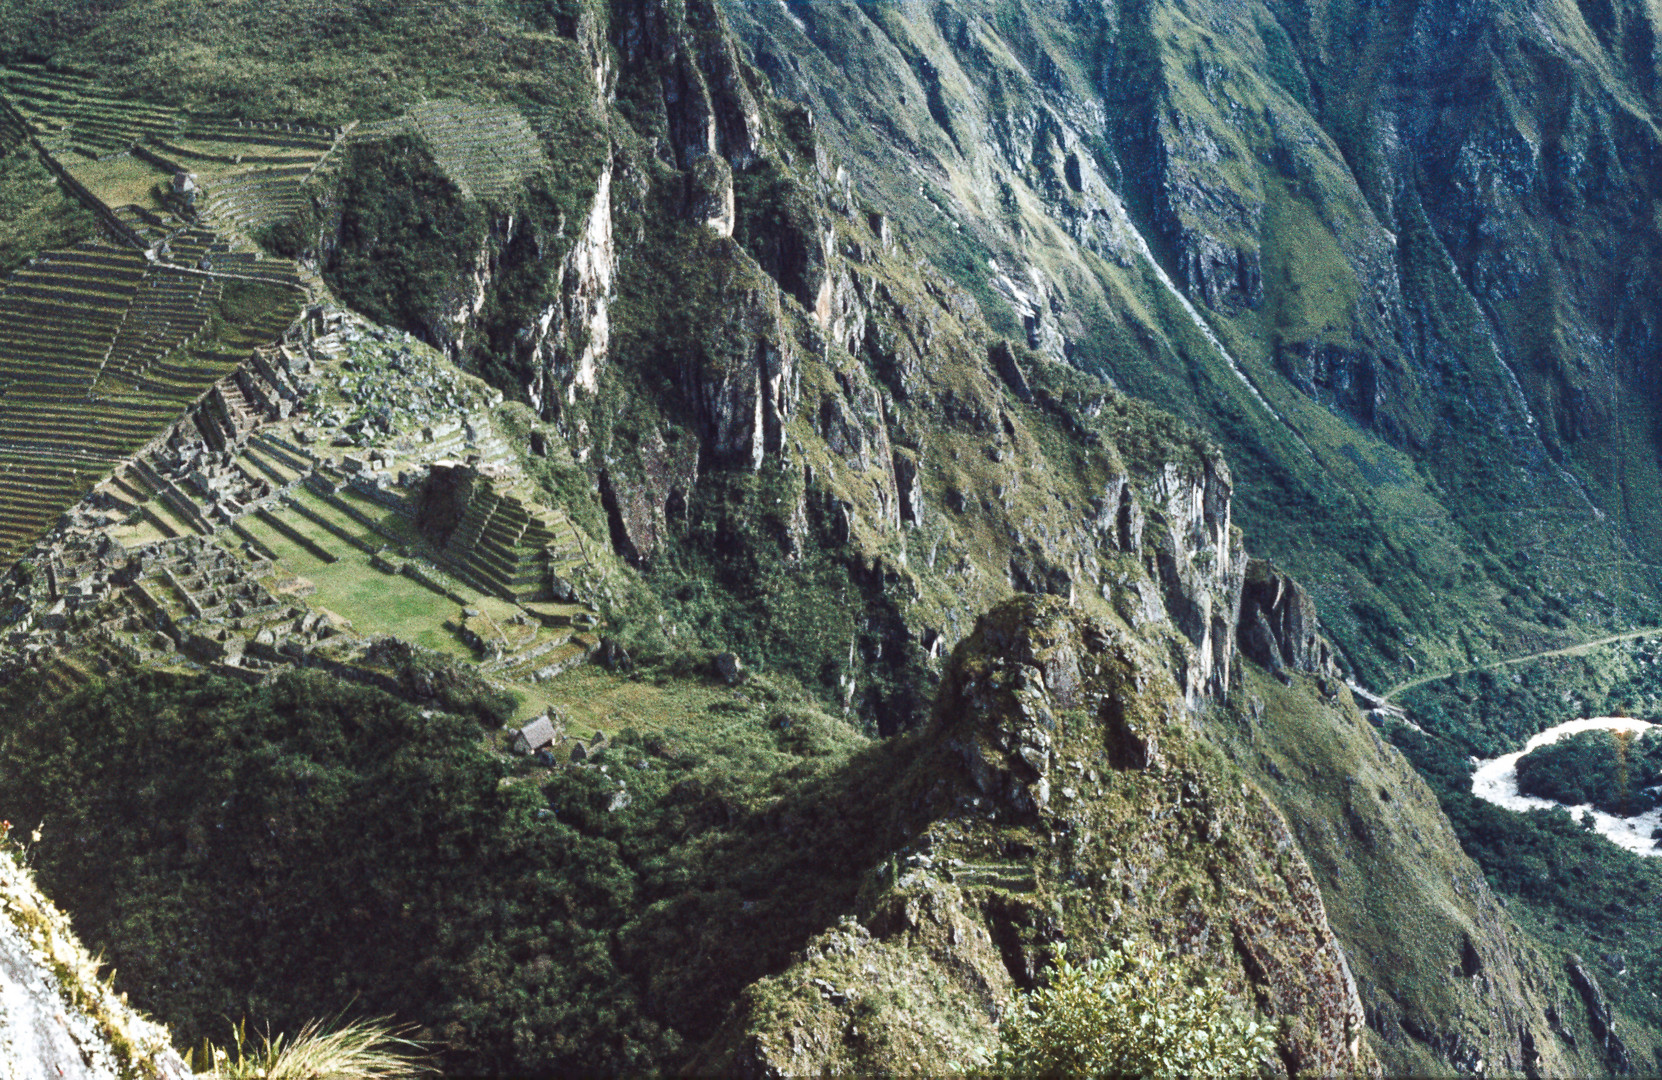  Blick auf Machu Picchu